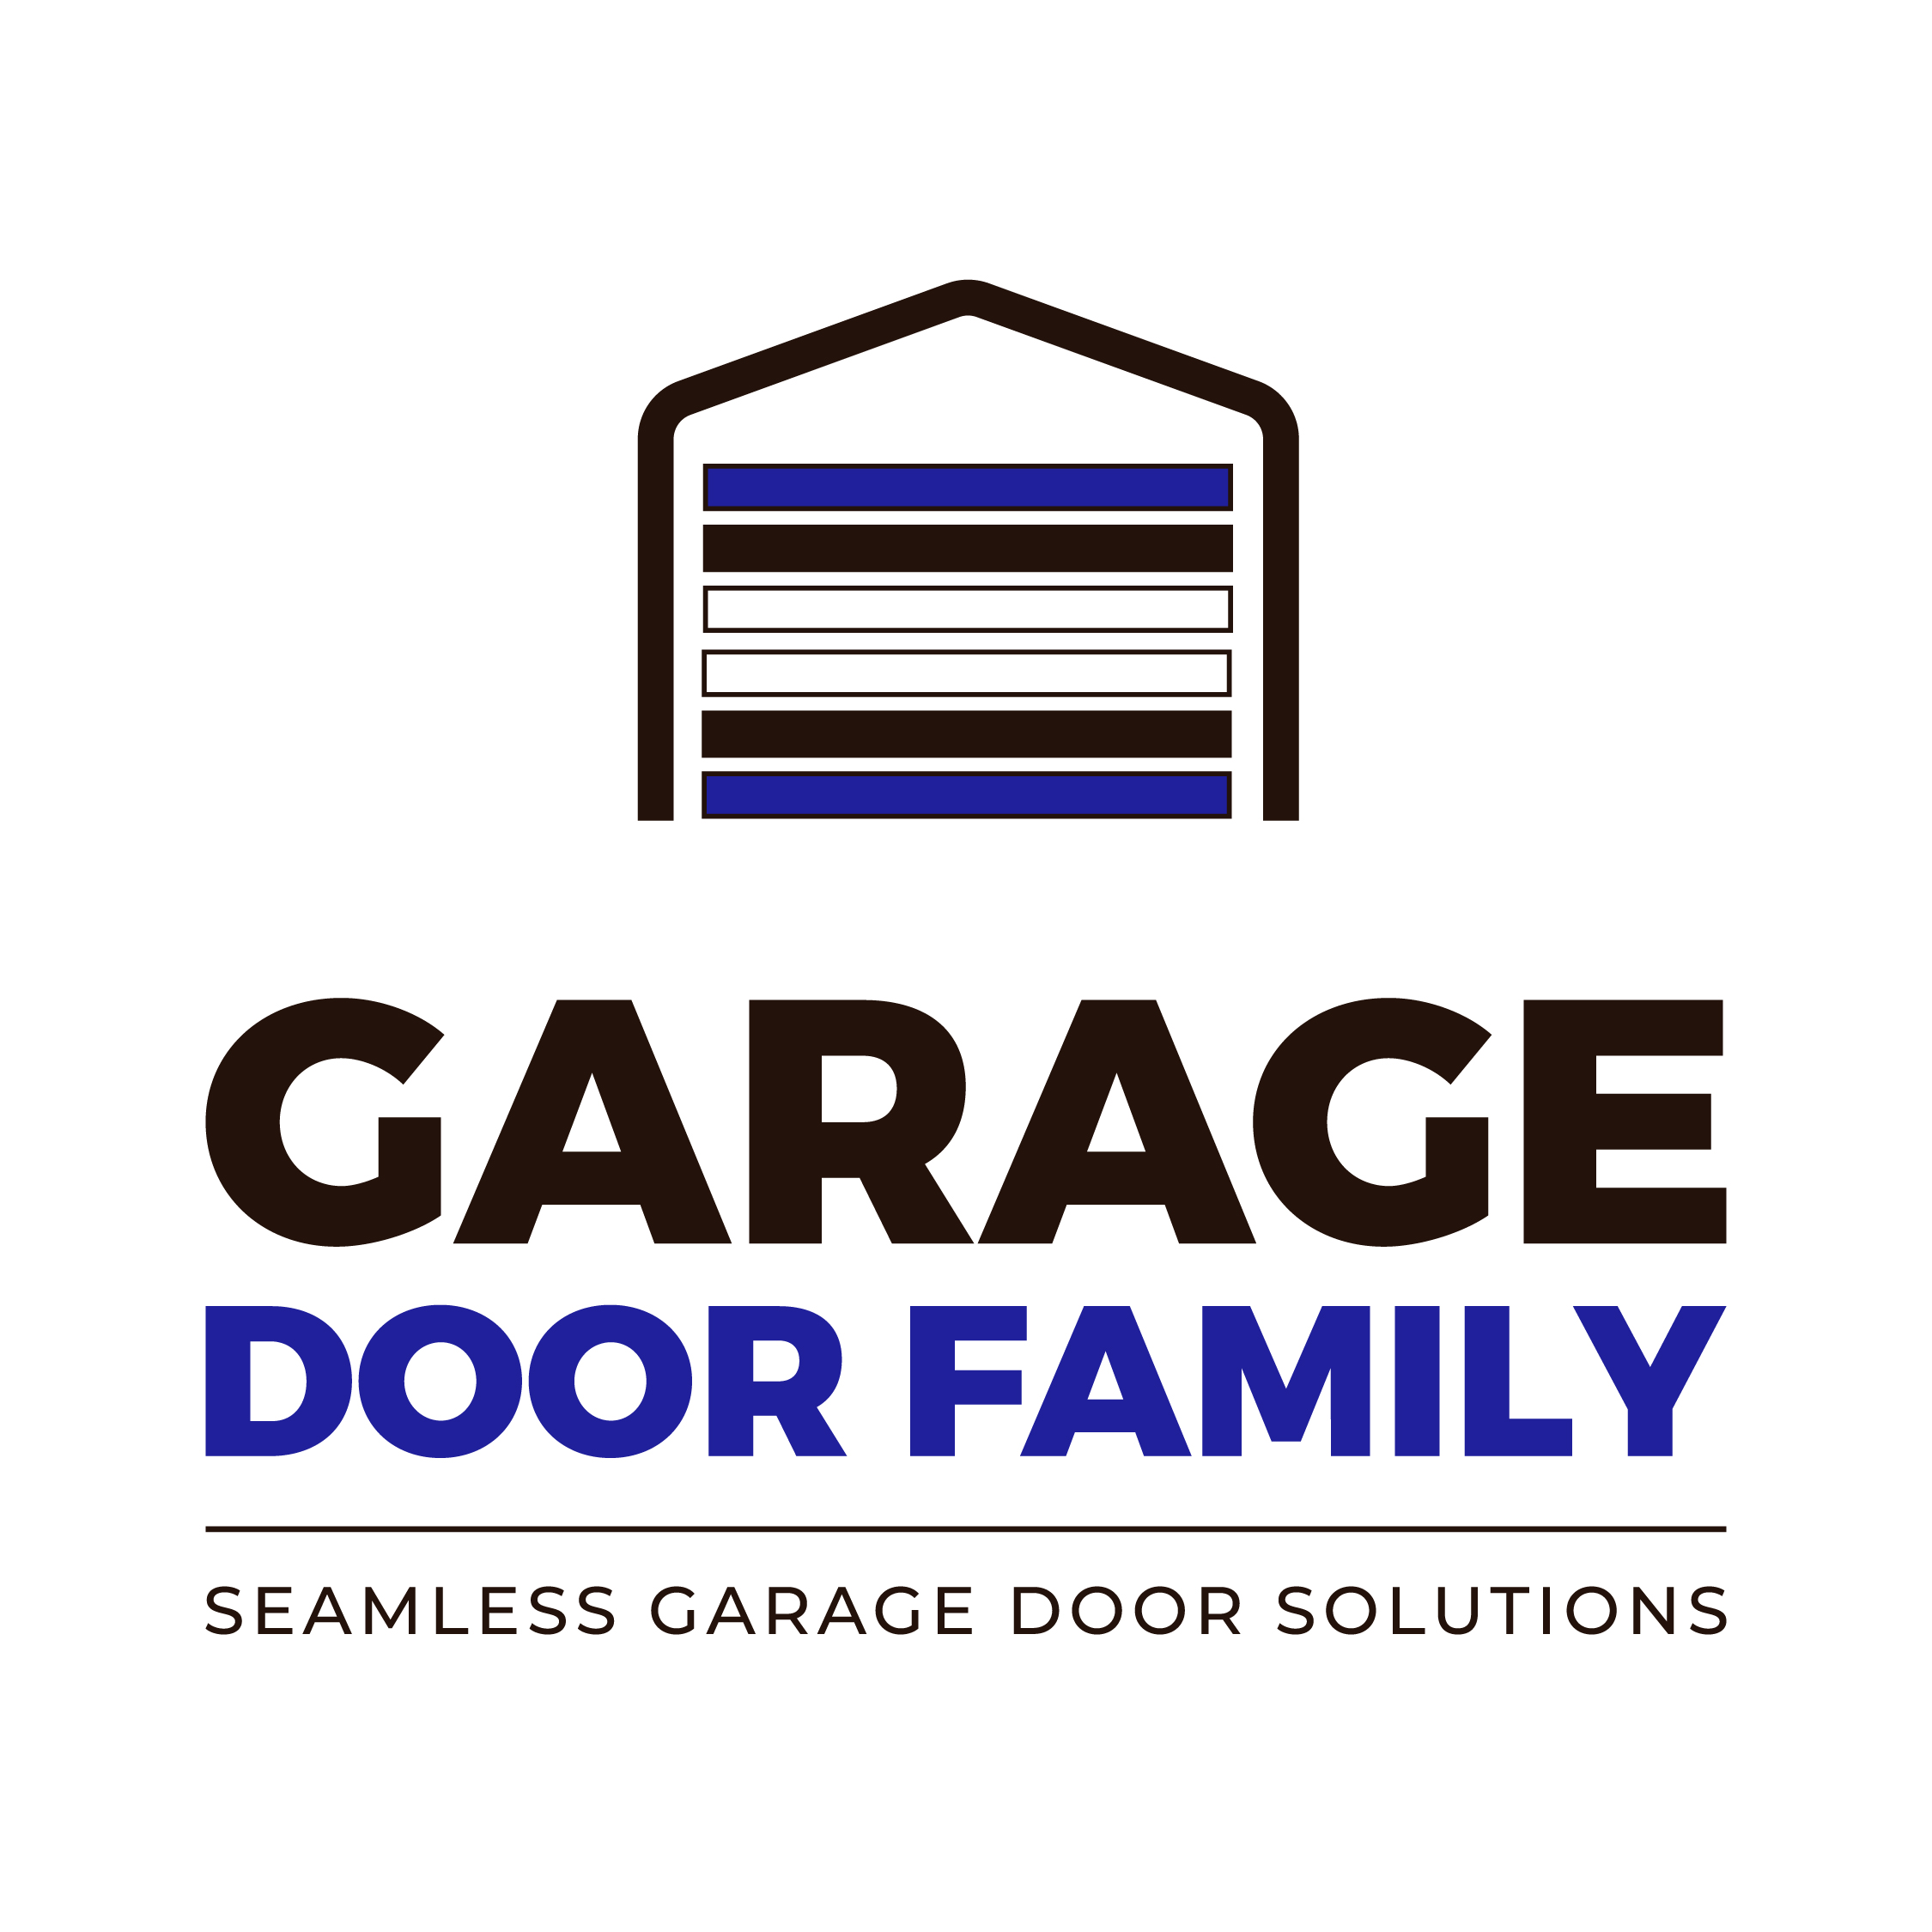 Garage Door Family Logo